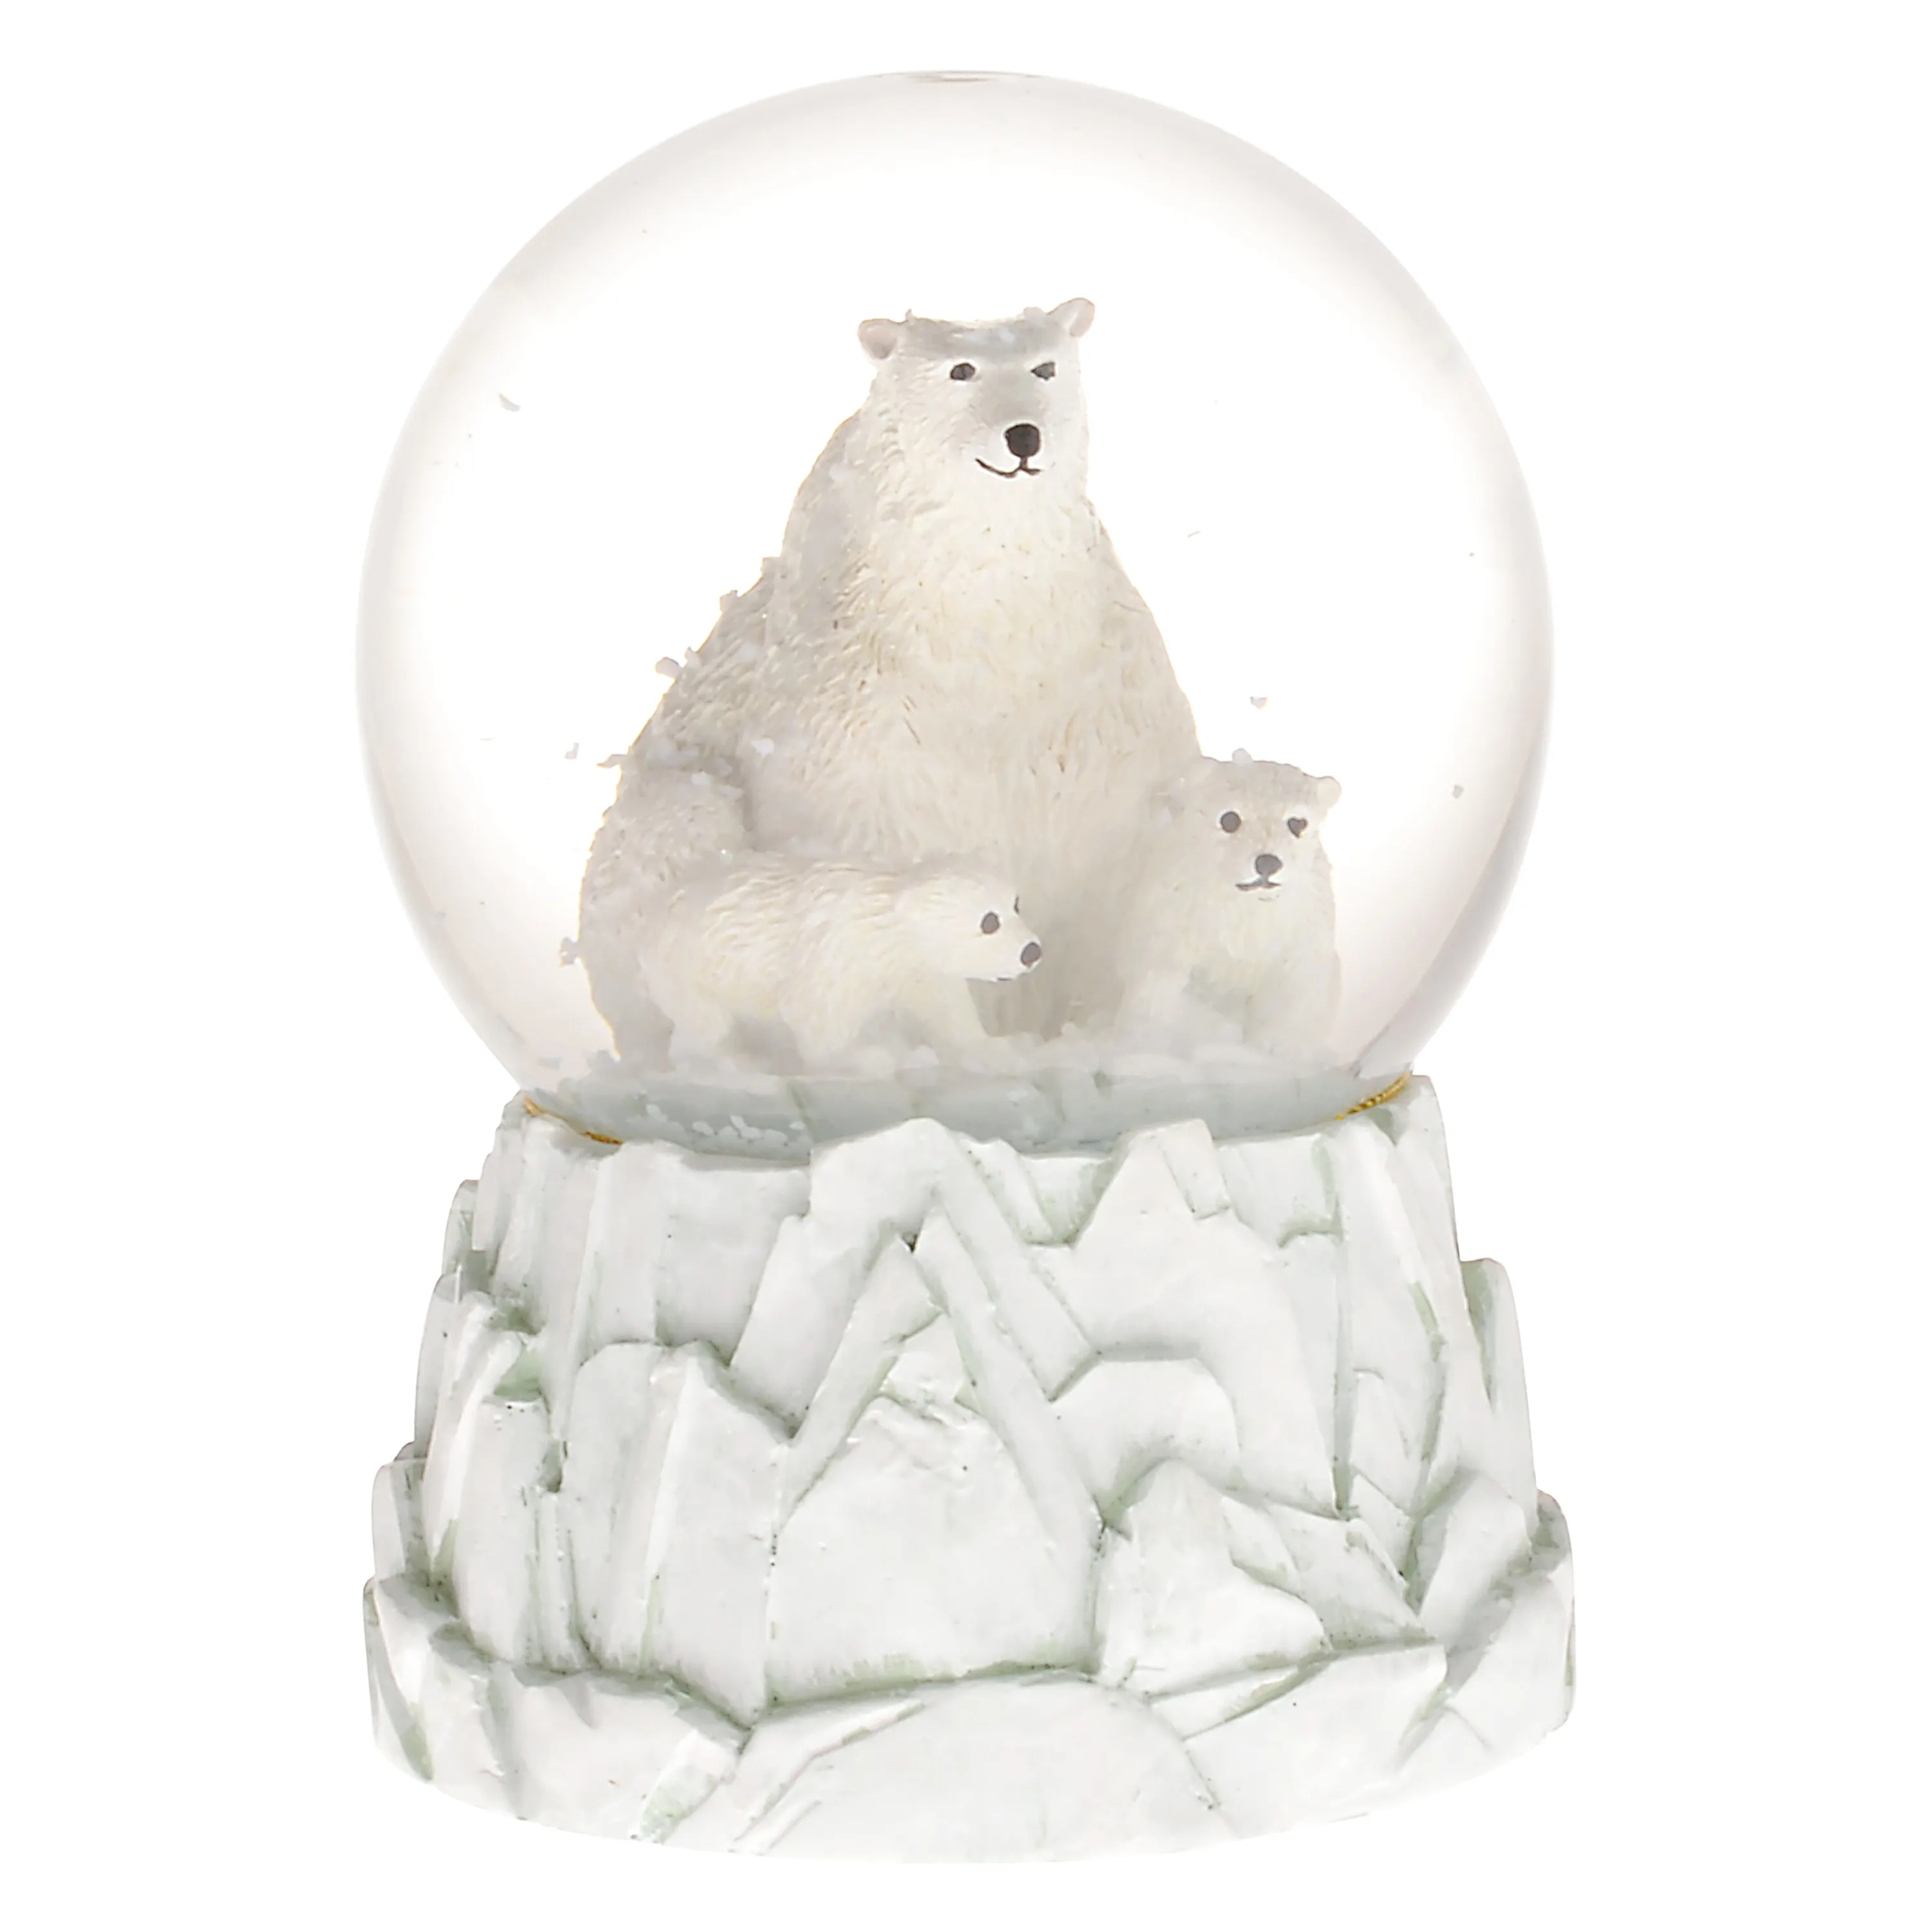 Musical Polar Bear Snow Globe with 3 polar bears at top an iceberg shaped platform Christmas Festivities